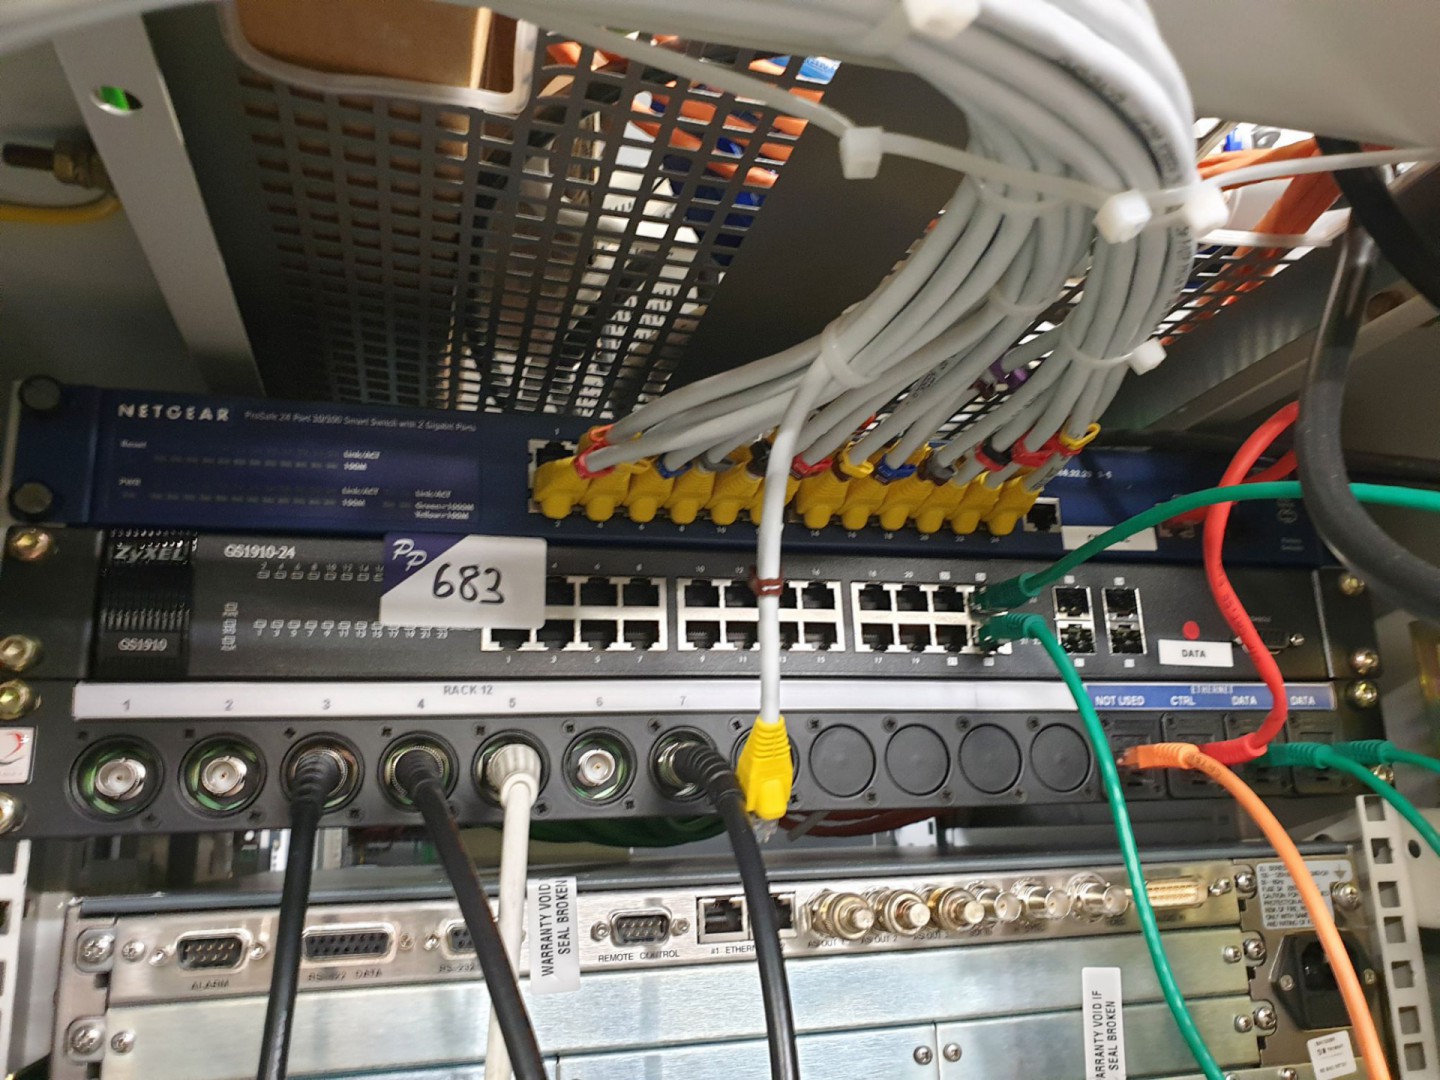 2x Zyxel GS1910-24 network switch